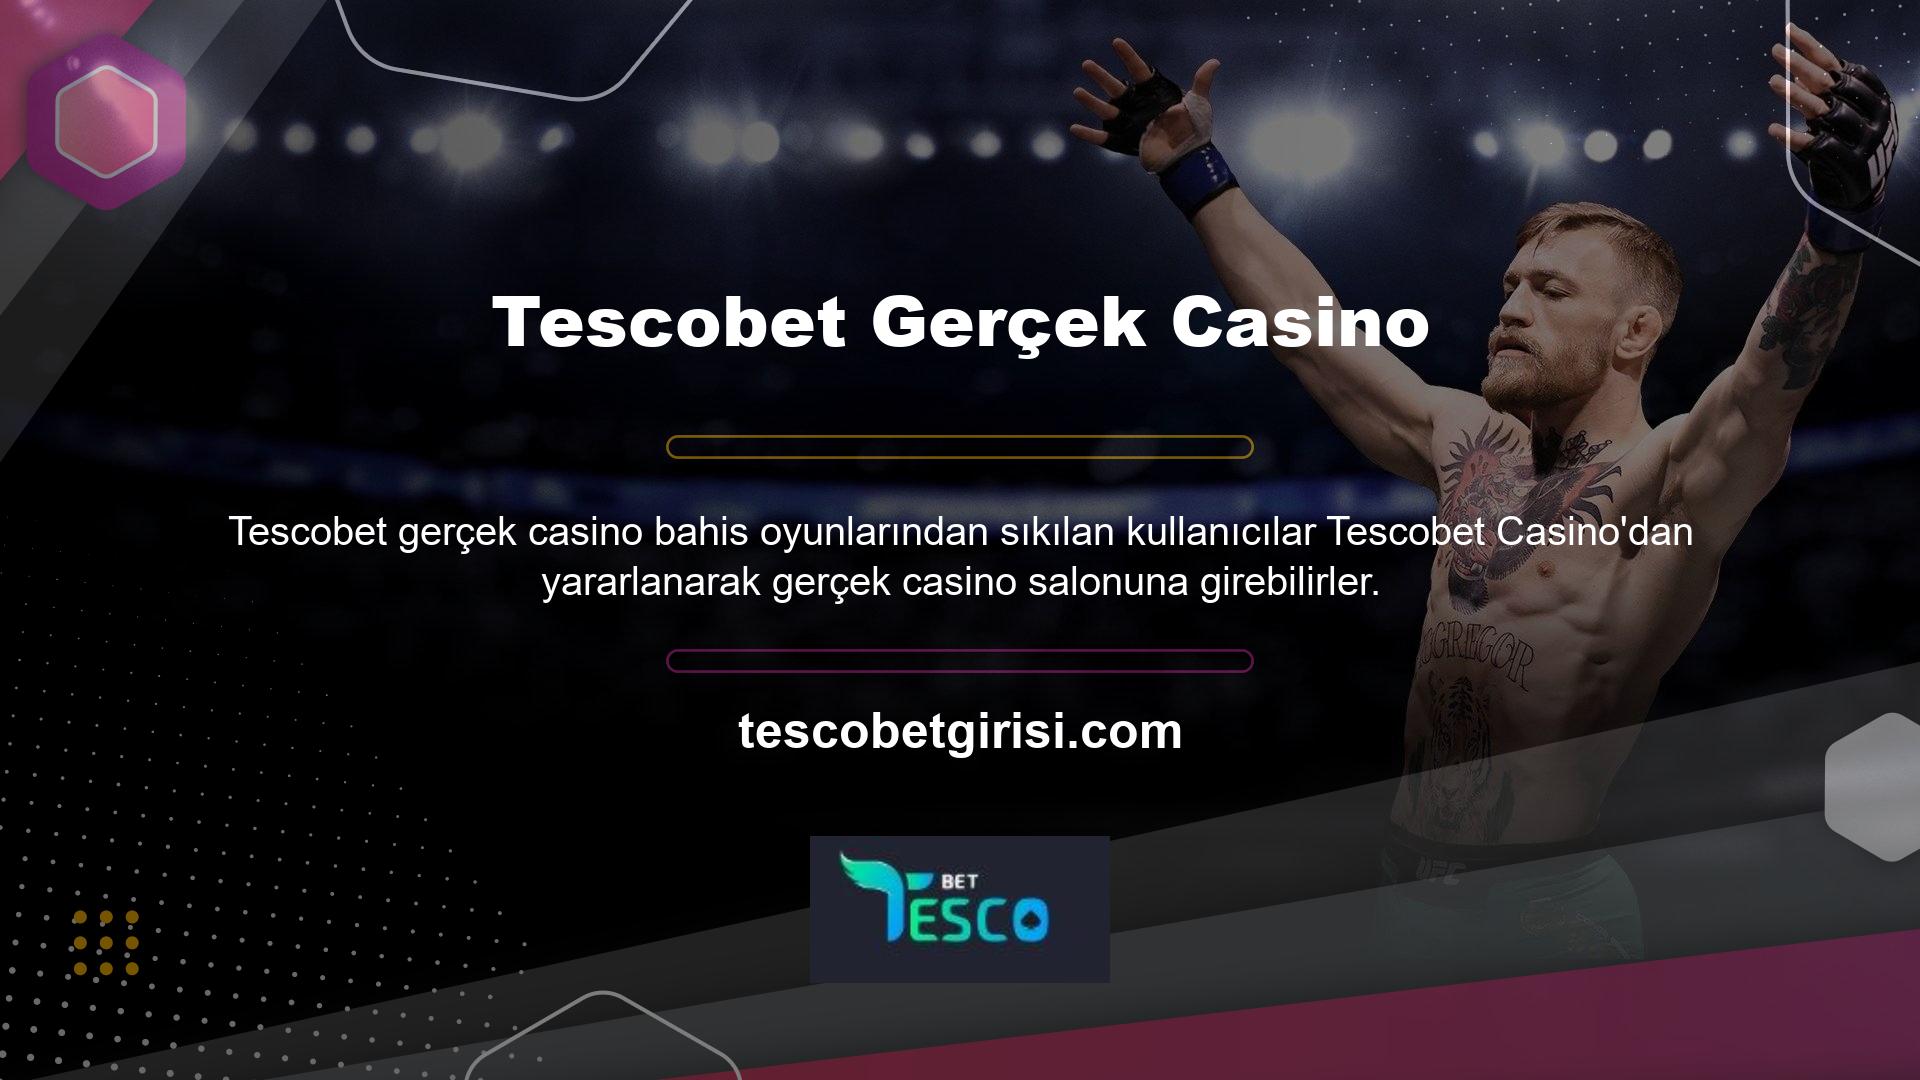 Tescobet, gerçek casino salonlarından gerçek casino hizmetleri sunmaktadır